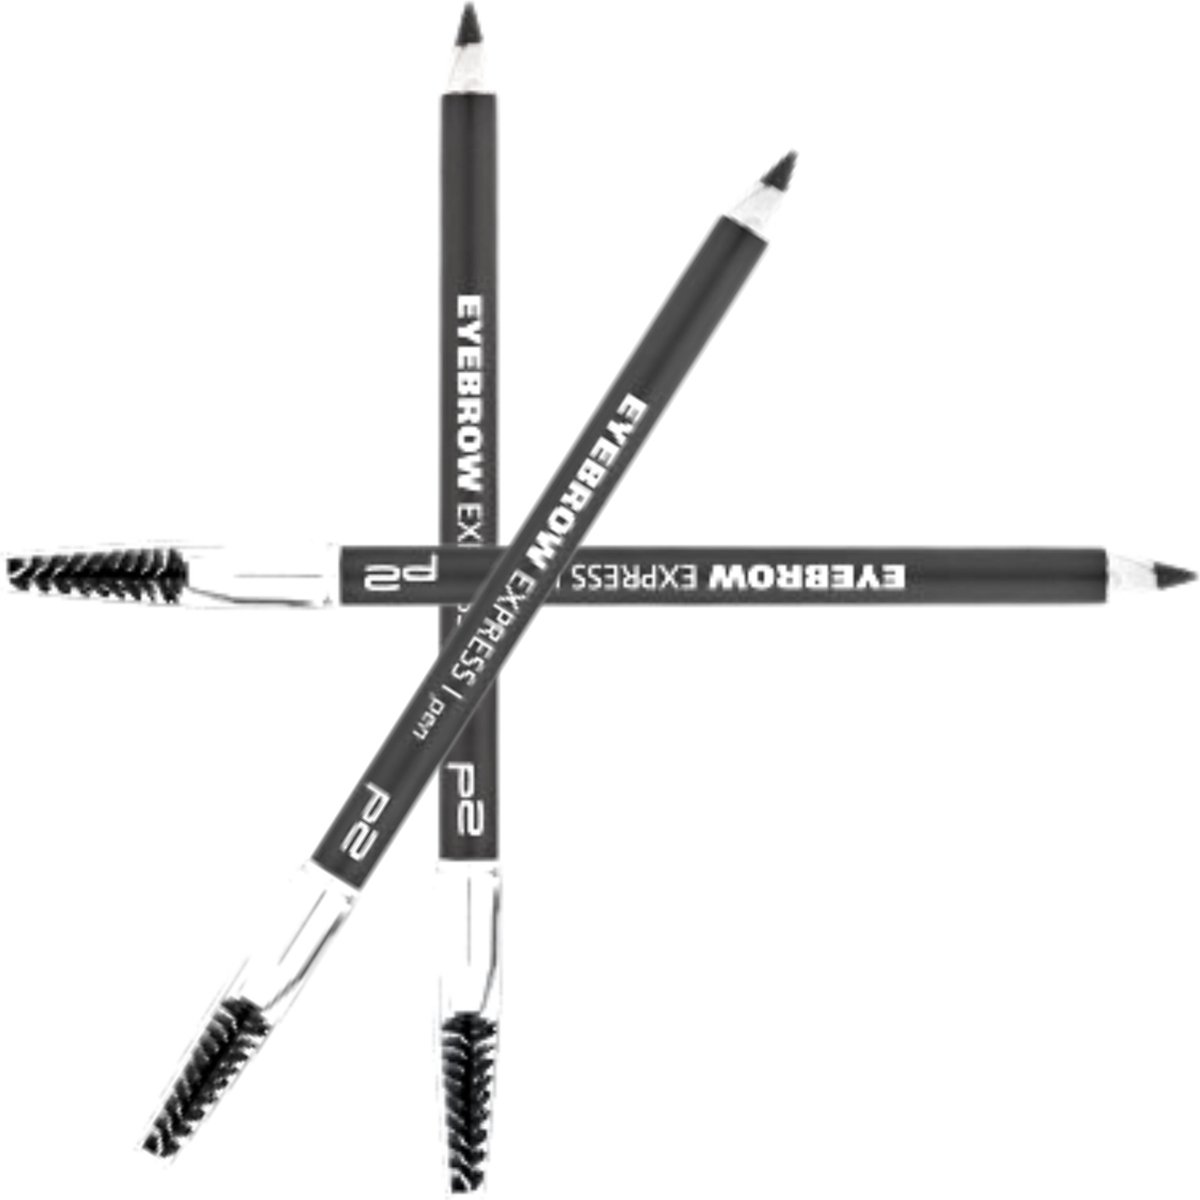 P2 Cosmetics Express Eyebrow Pencil Sophisticated Ebony Black - 3 Stuk - Wenkbrauwpotlood Zwart - Met Borsteltje - Voordeelverpakking